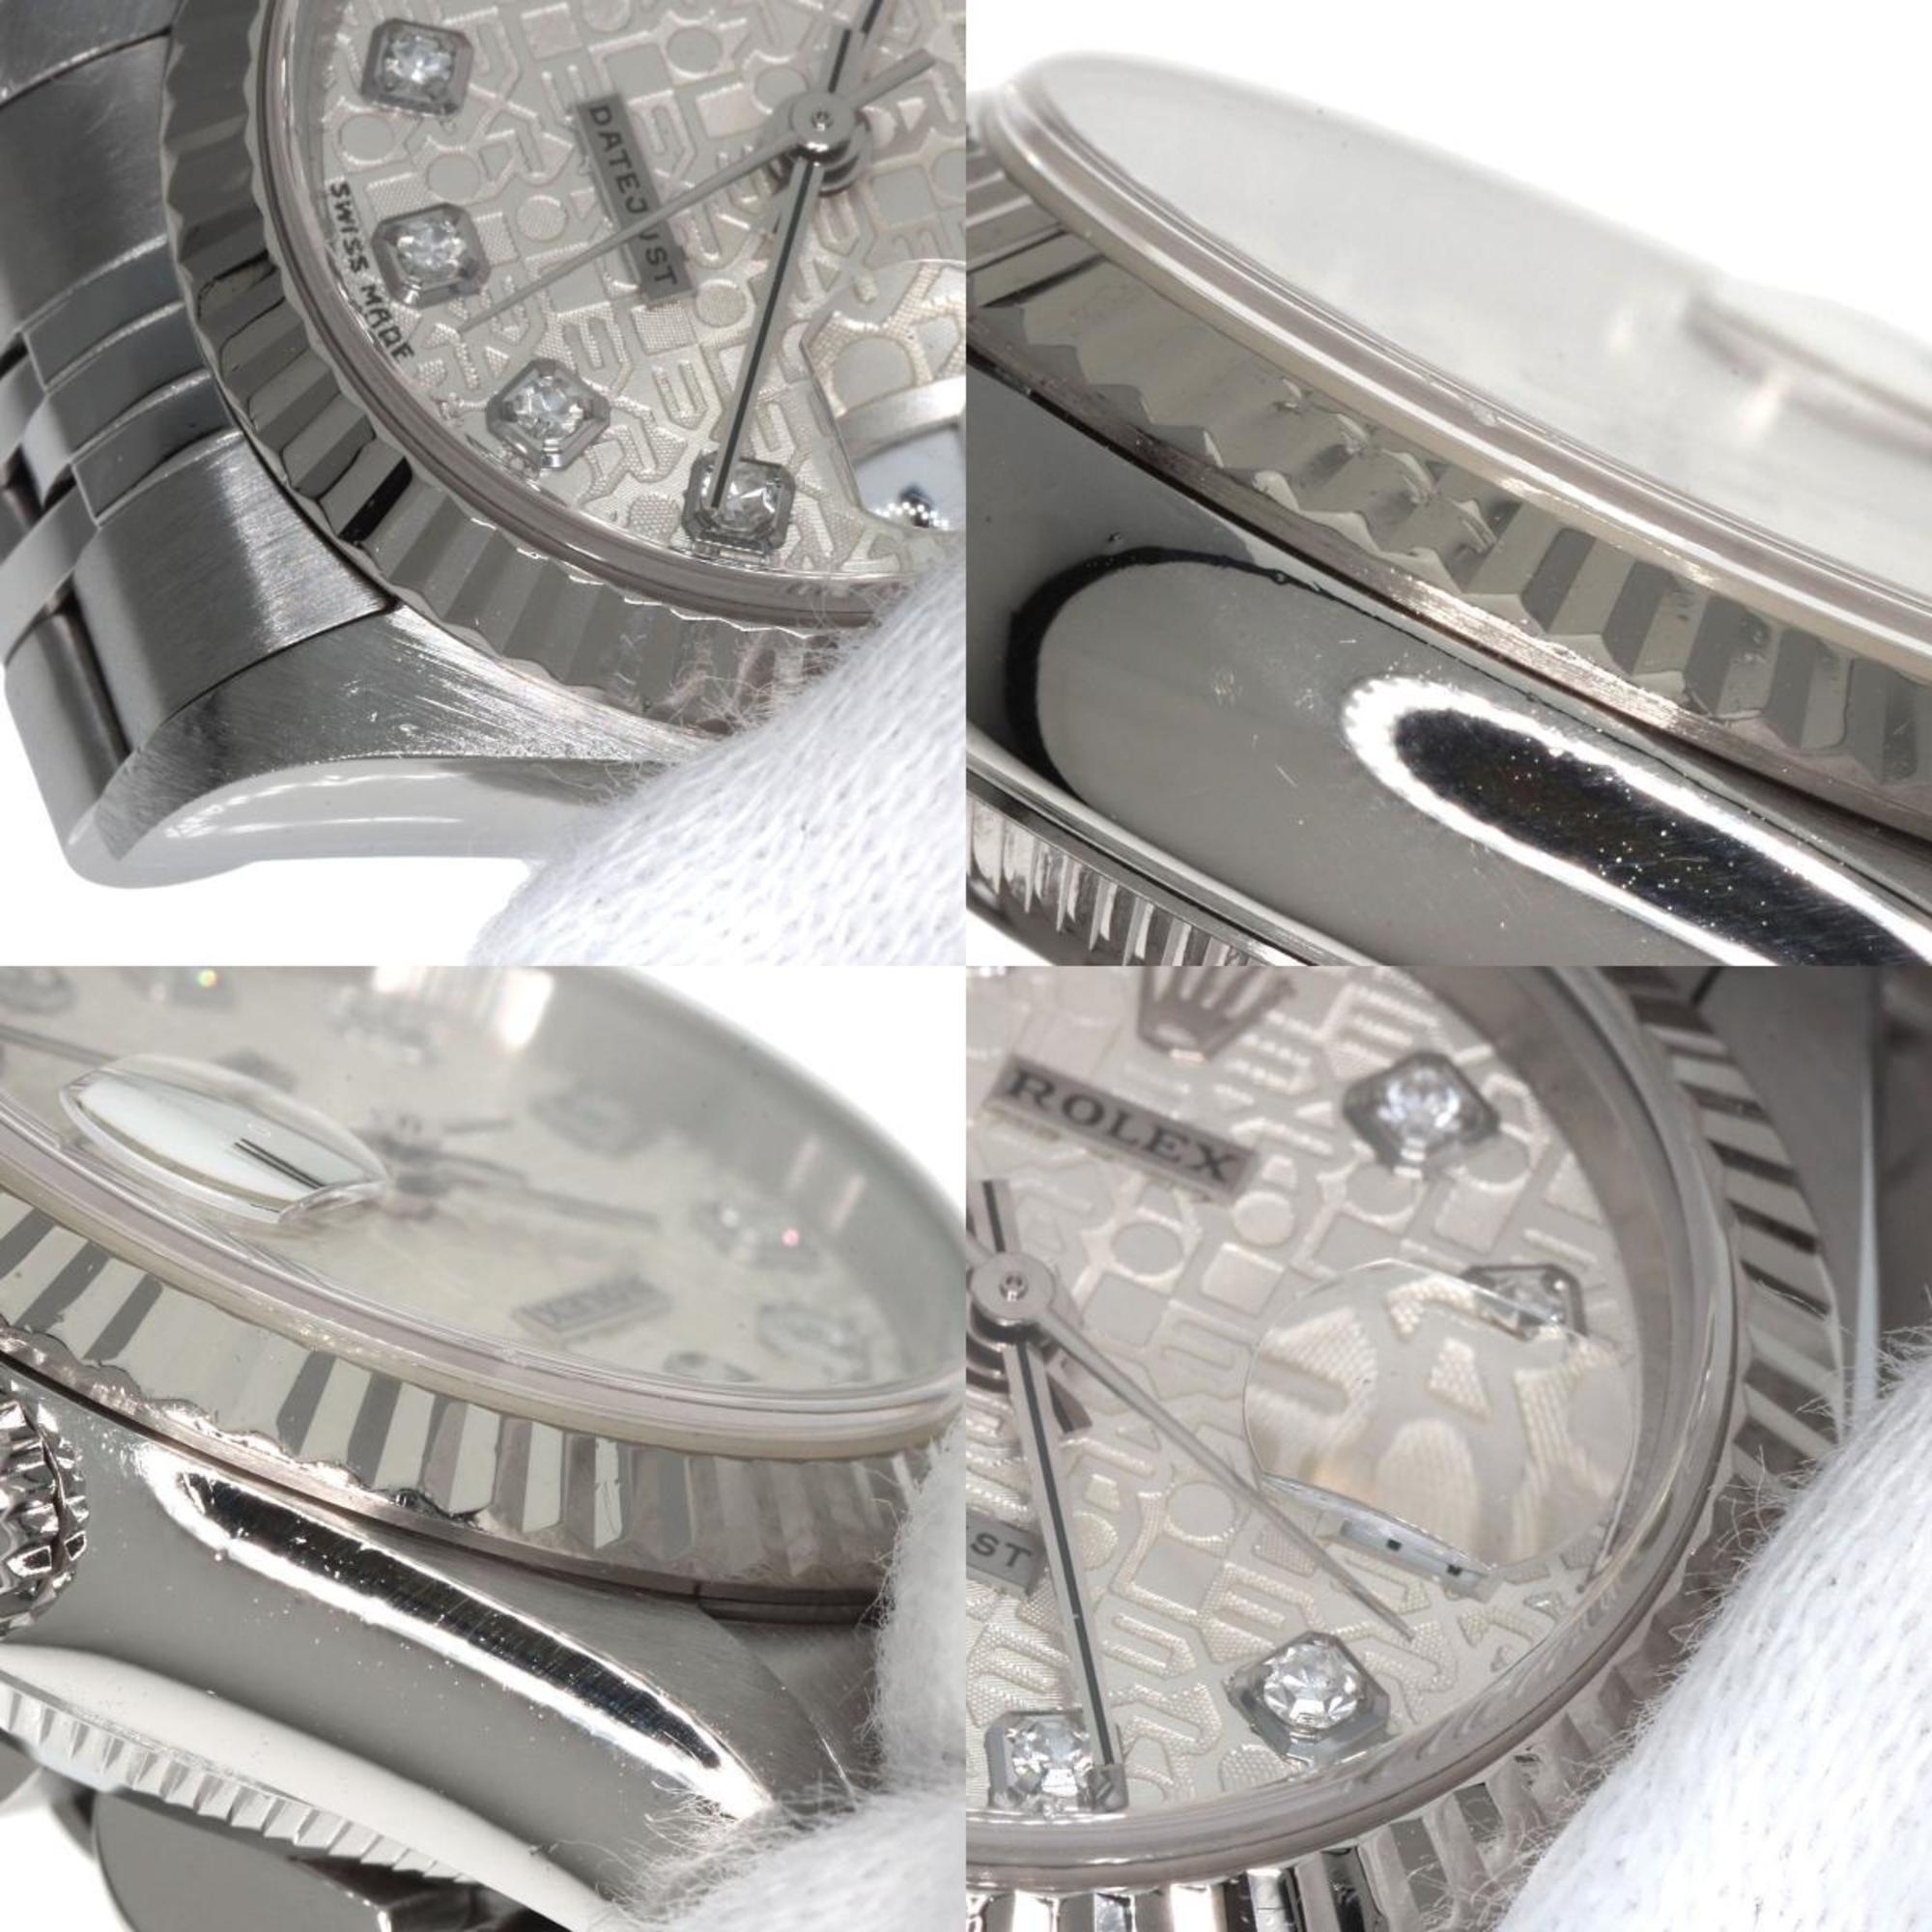 Rolex 79174G Datejust 10P Diamond Watch Stainless Steel/SS Ladies ROLEX